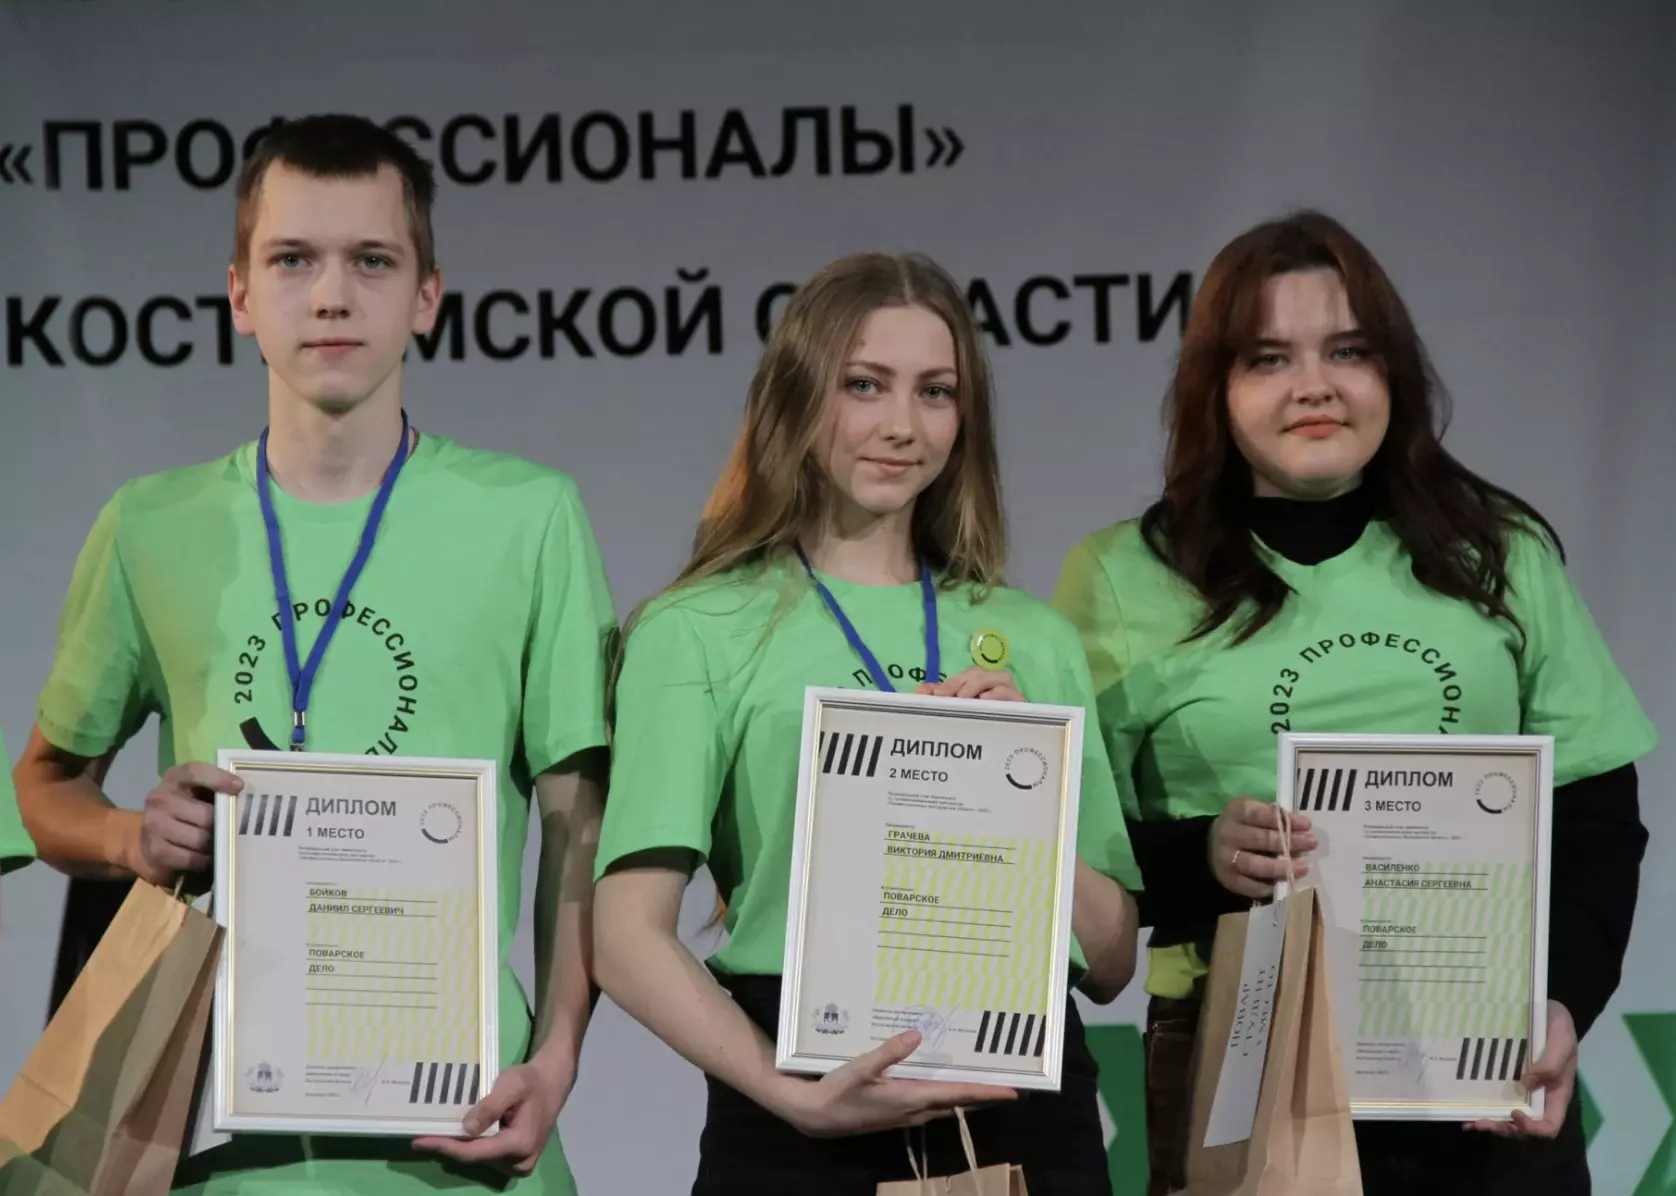 Победители и призеры чемпионата «Профессионалы» получат премии правительства